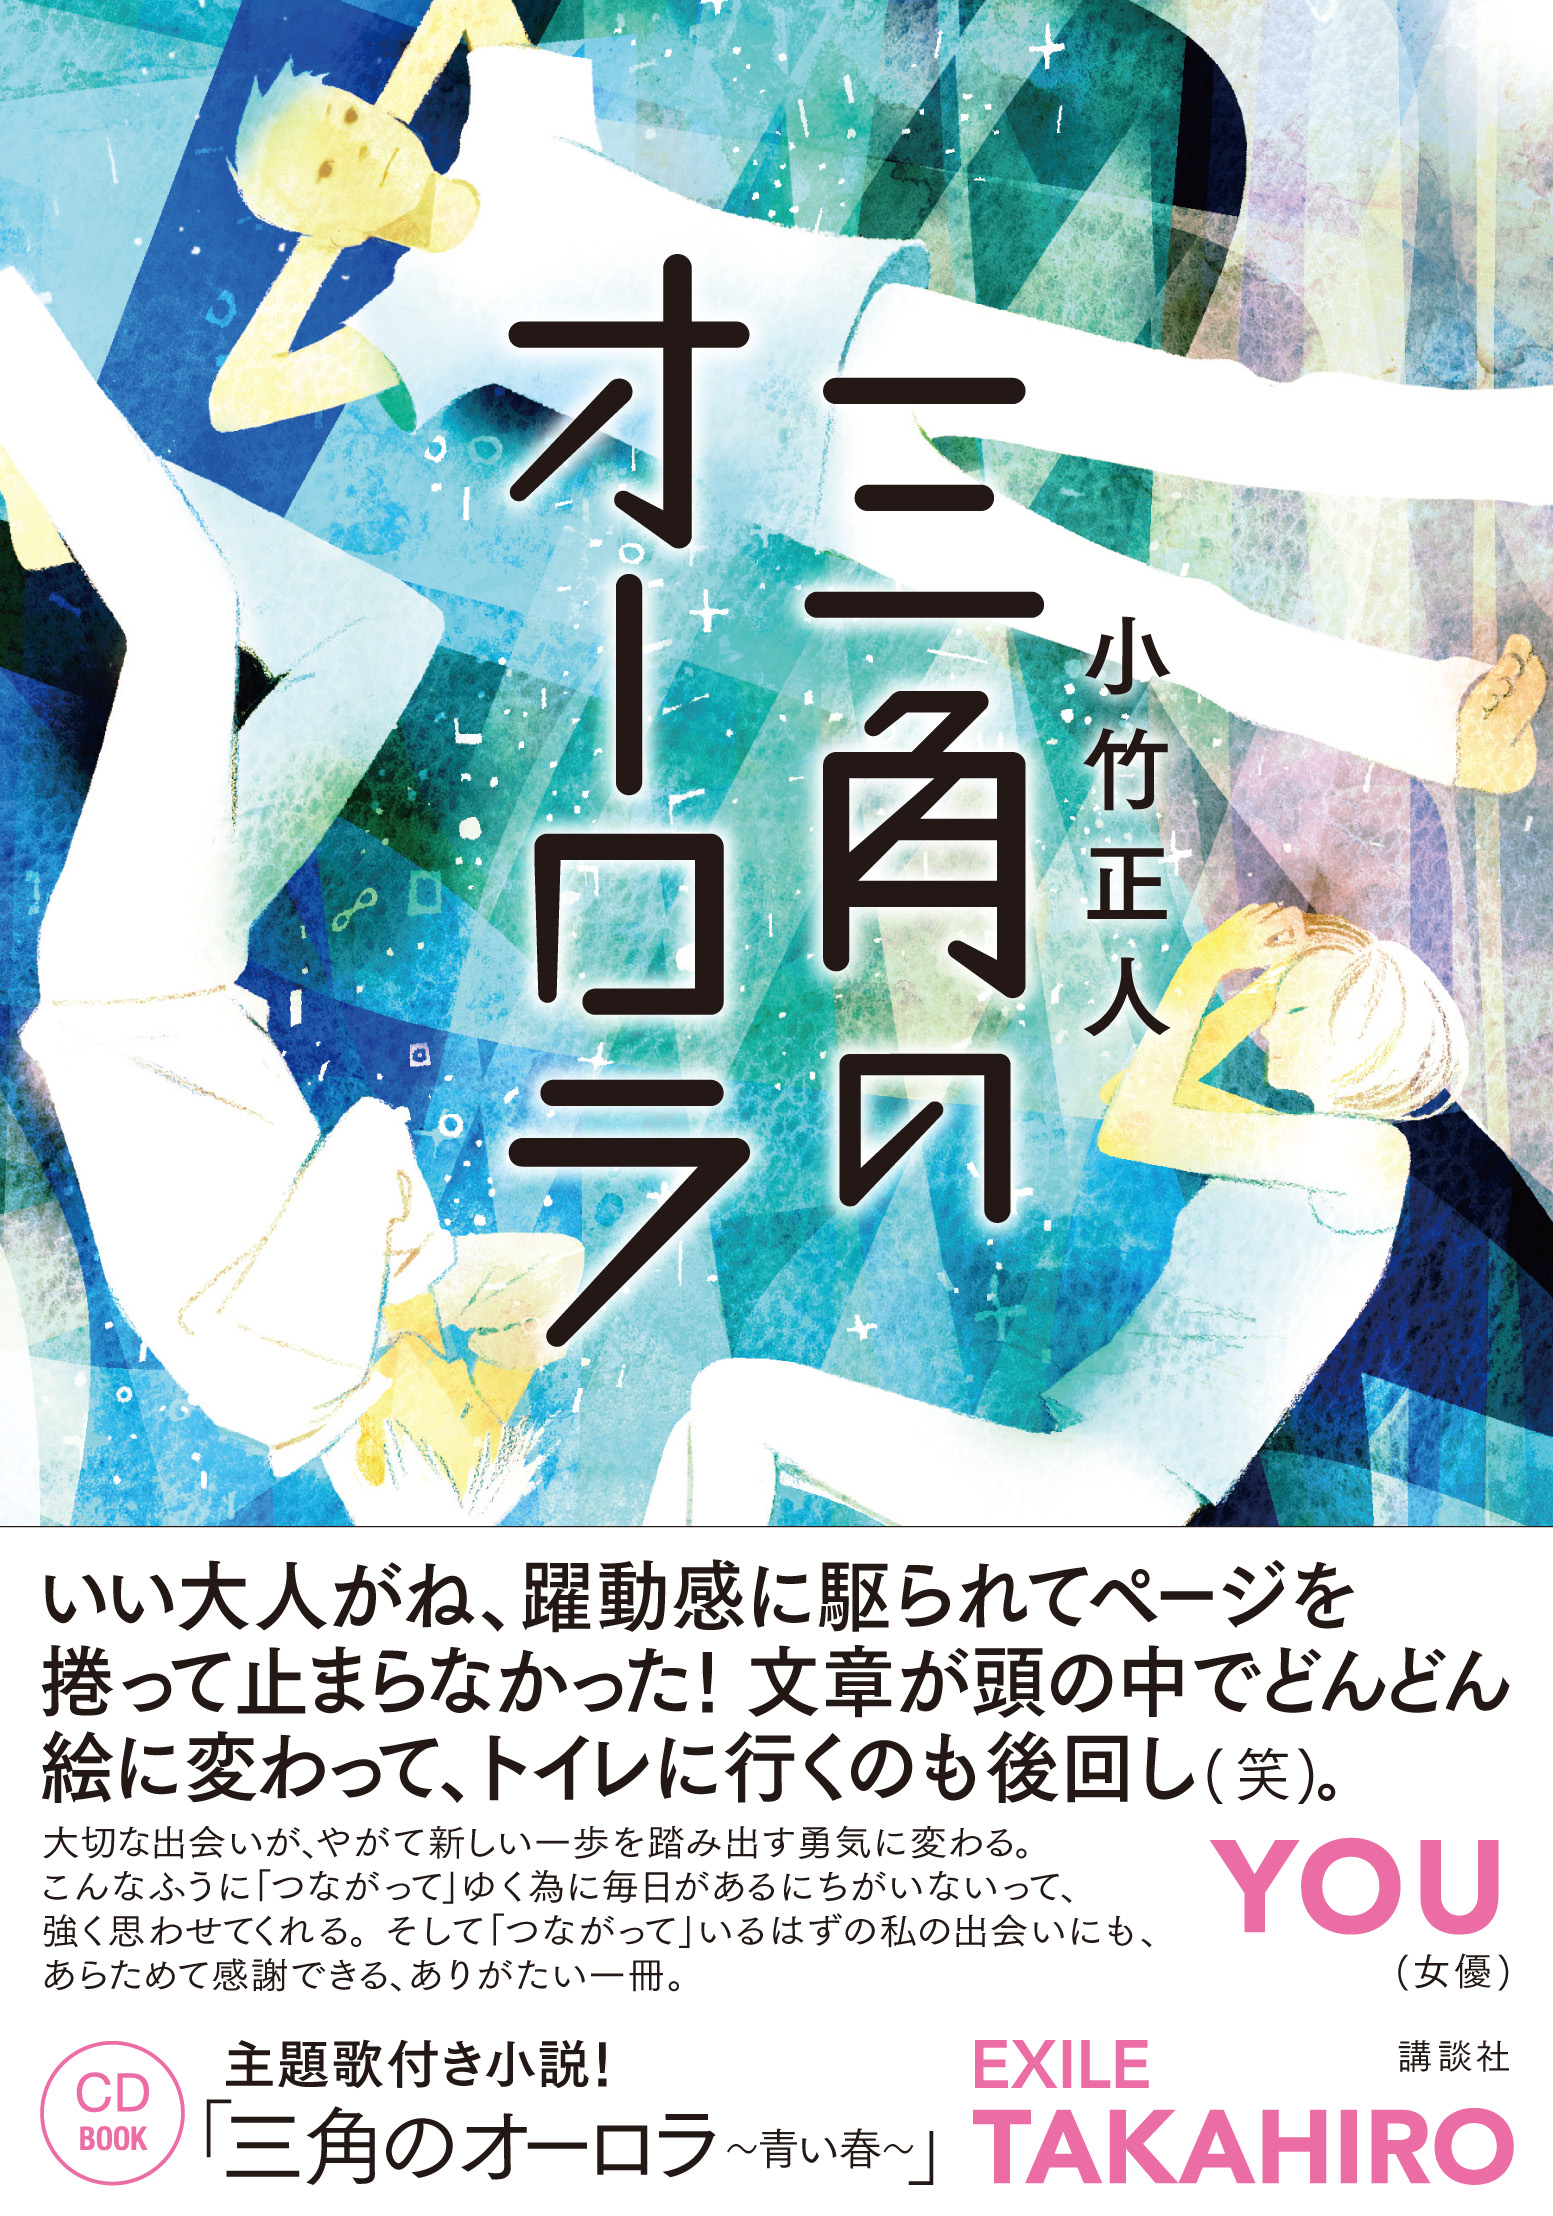 Exile Takahiroの主題歌付き小説発売 三角のオーロラ の読みどころはココ ダ ヴィンチニュース